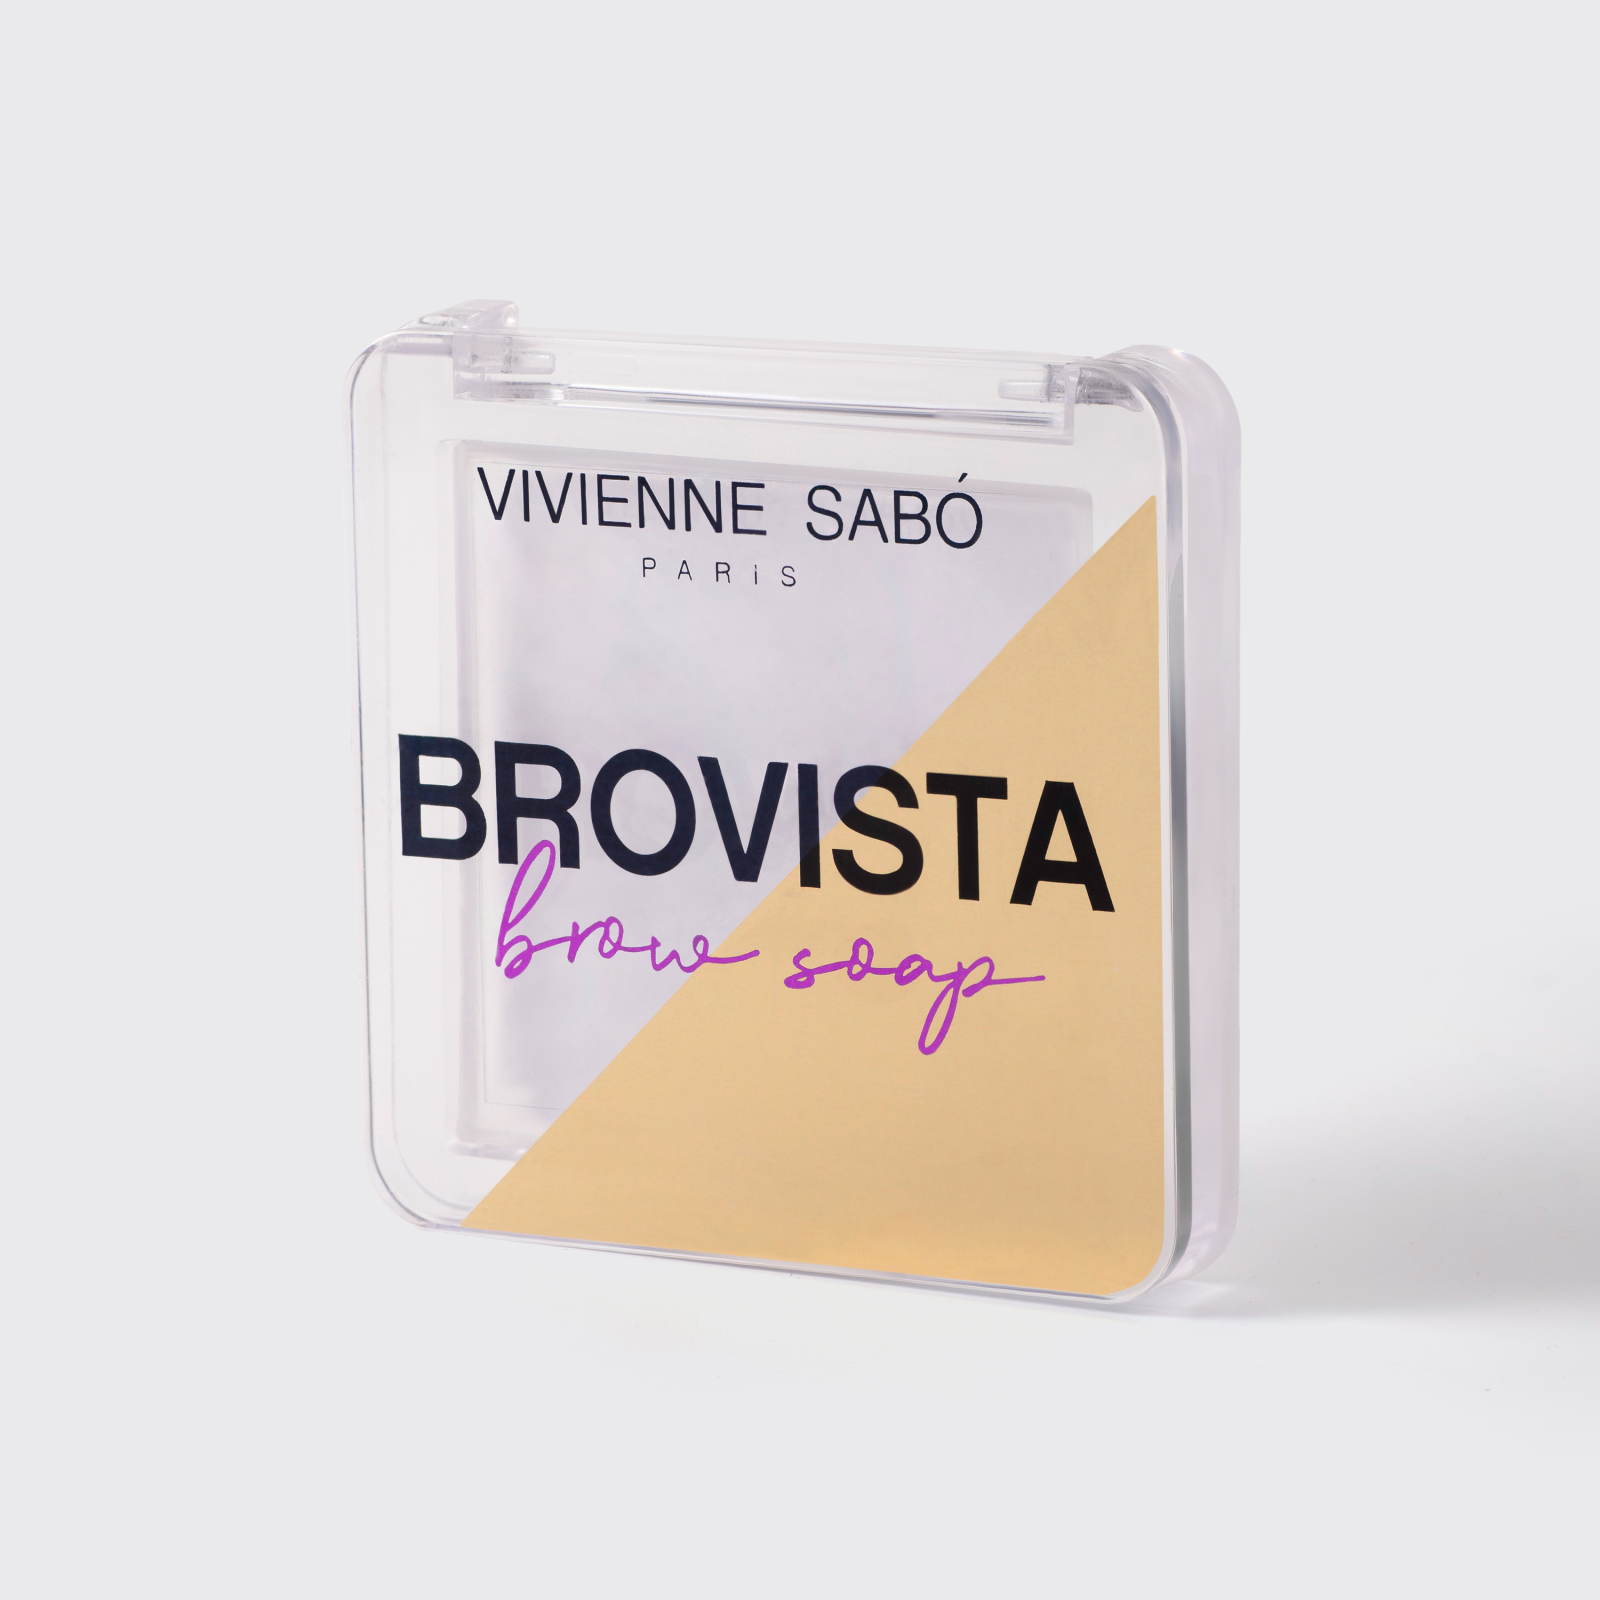 Фиксатор для бровей Vivienne Sabo Brovista brow soap - фото №16